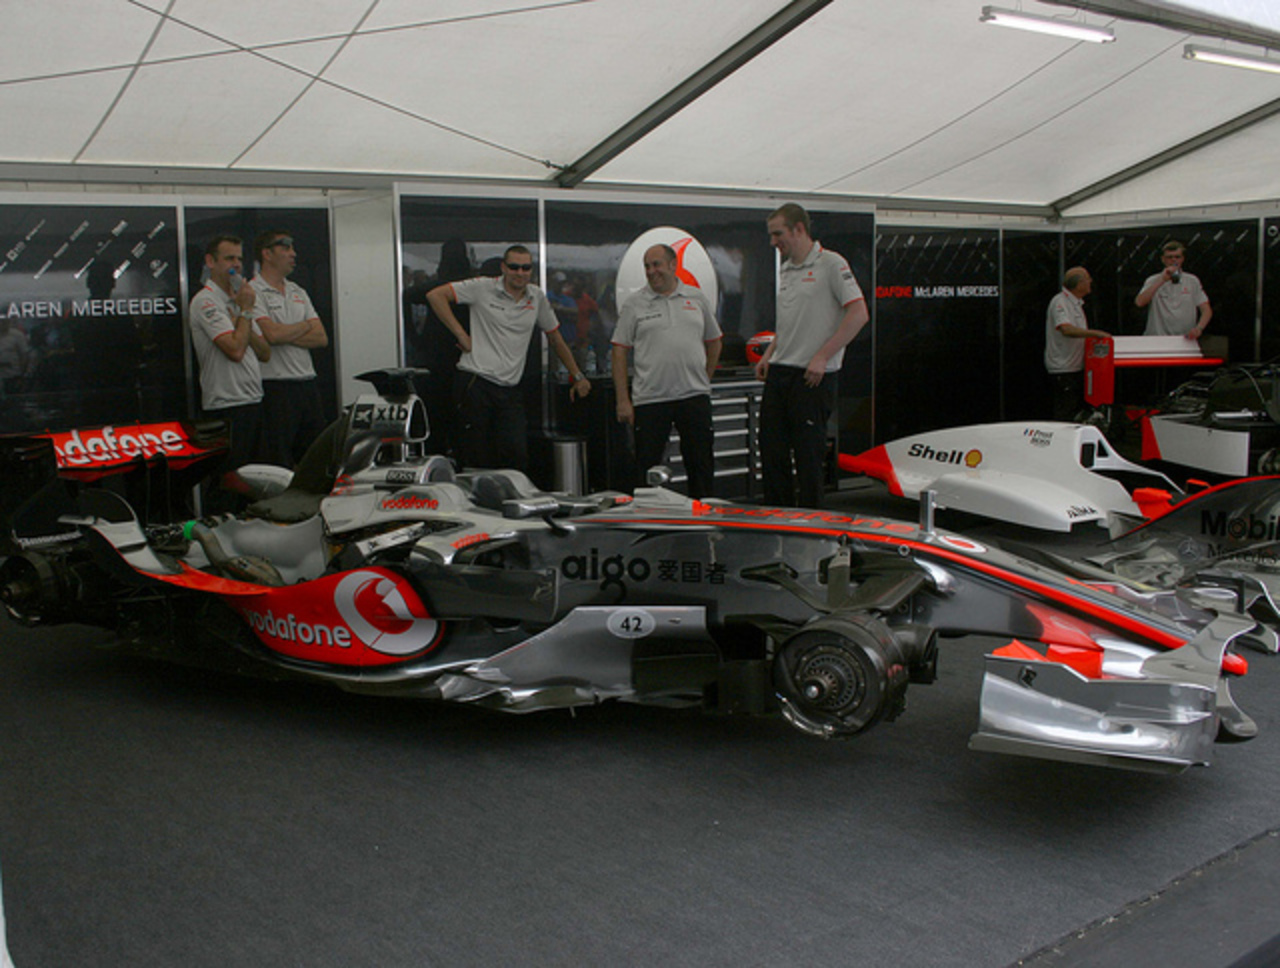 Flickr : Le Pool de Voitures McLaren Grand Prix